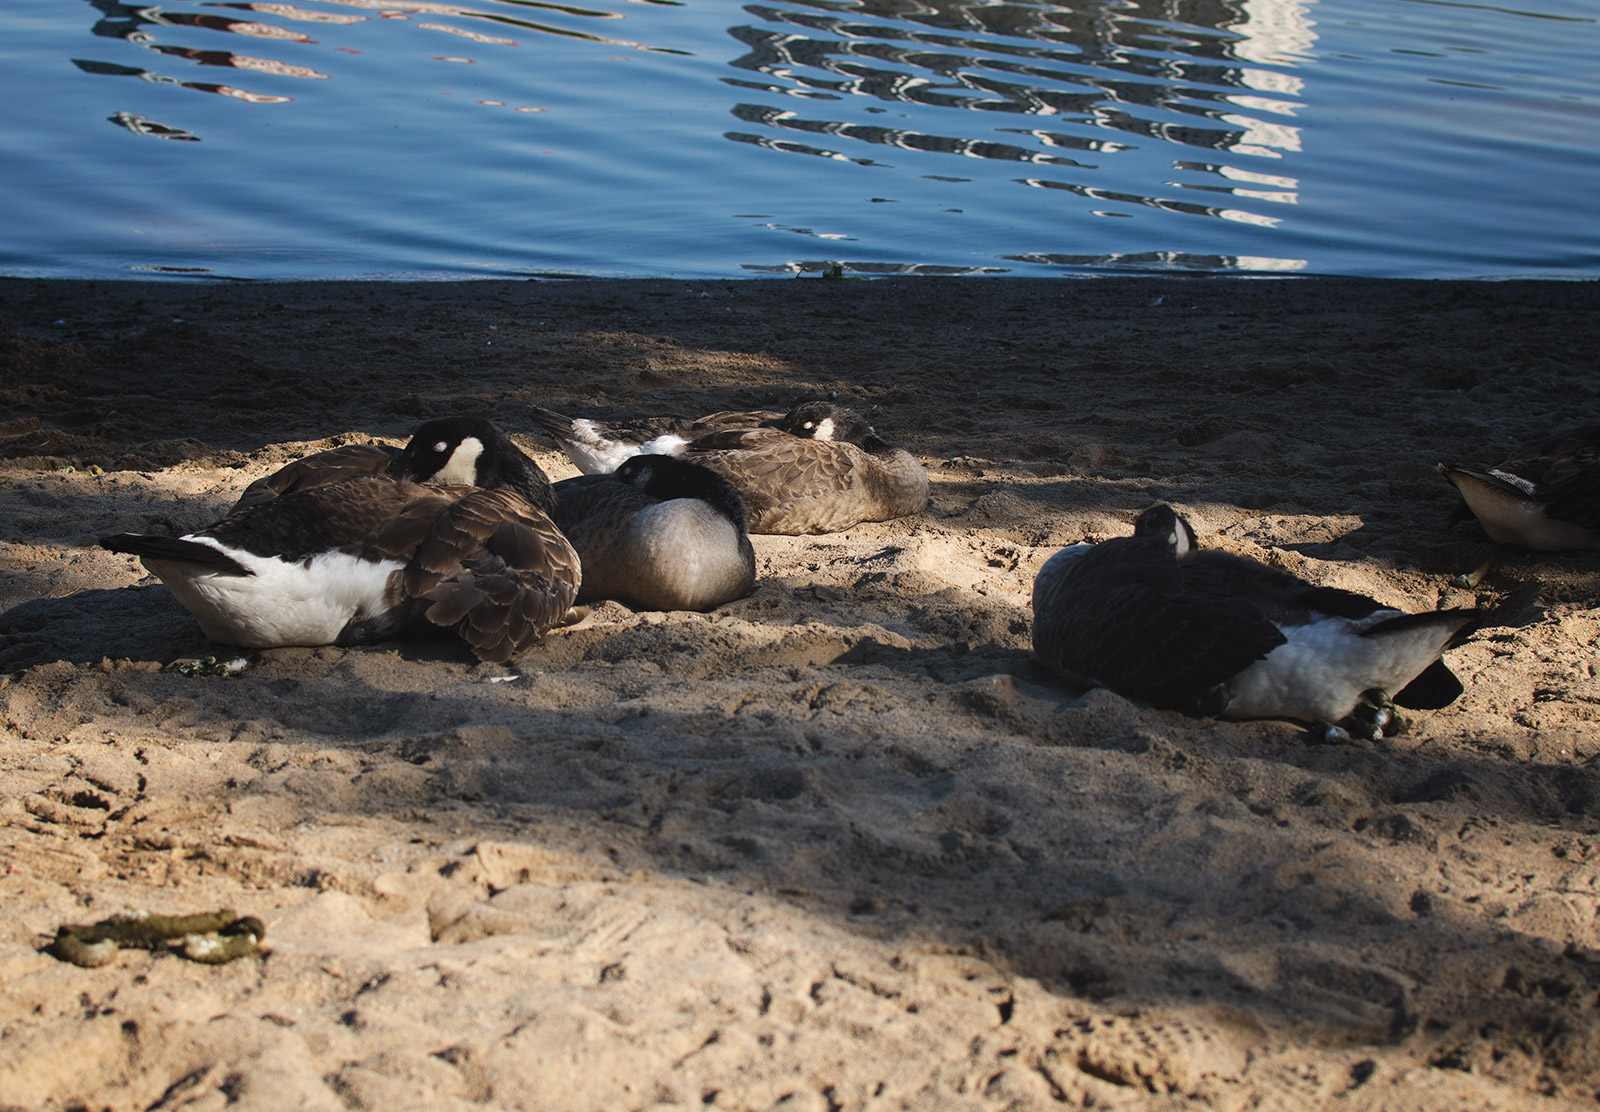 Sleeping geese